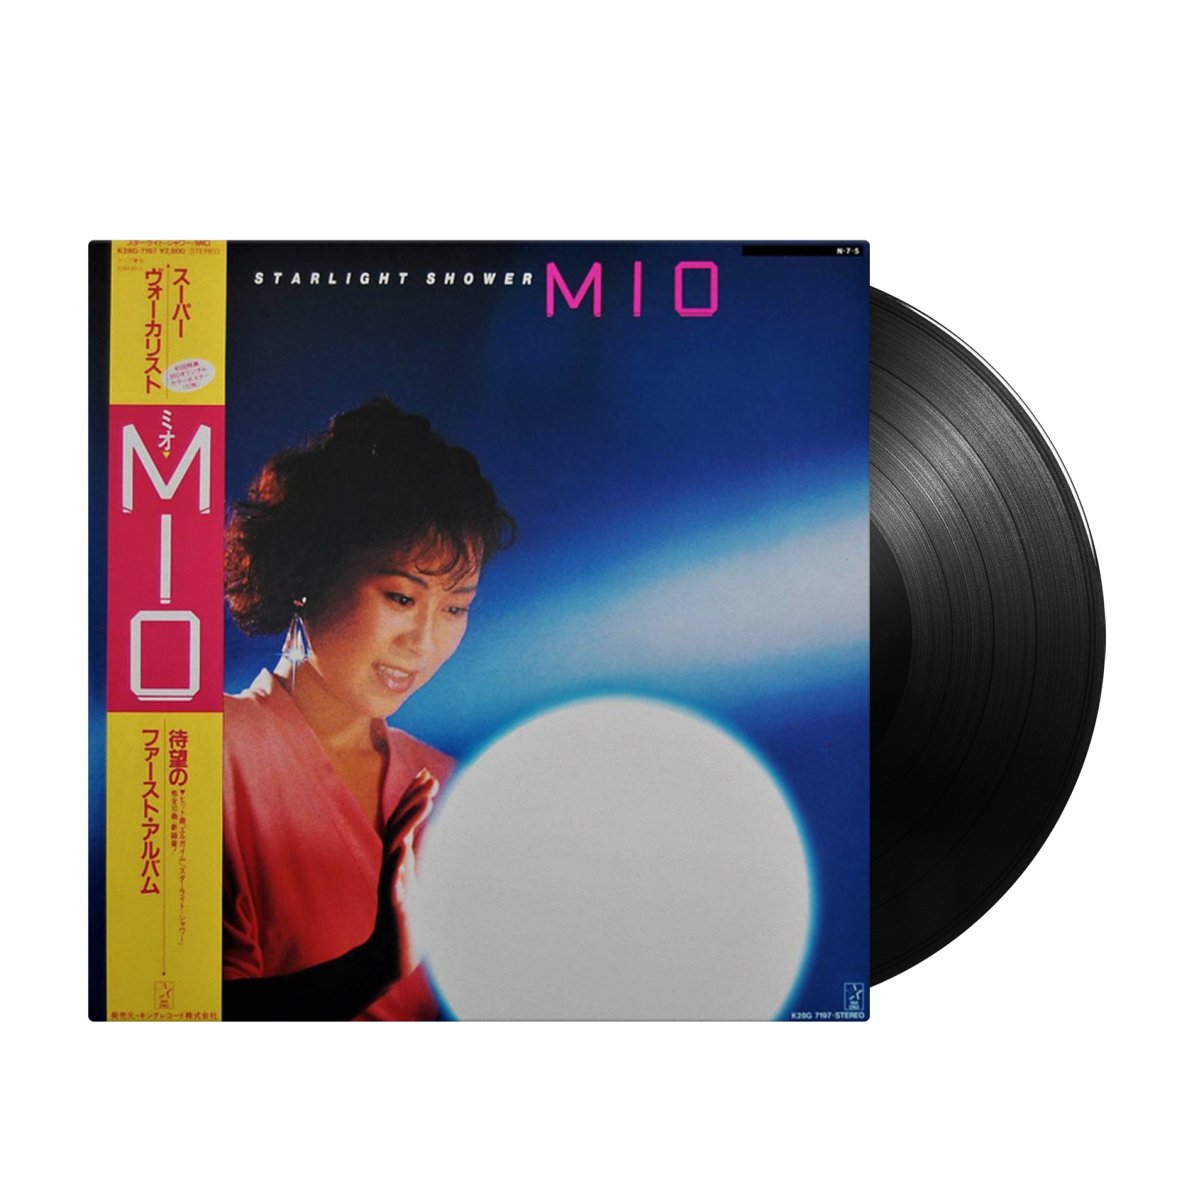 Mio - Starlight Shower (Japan Import) - Inner Ocean Records